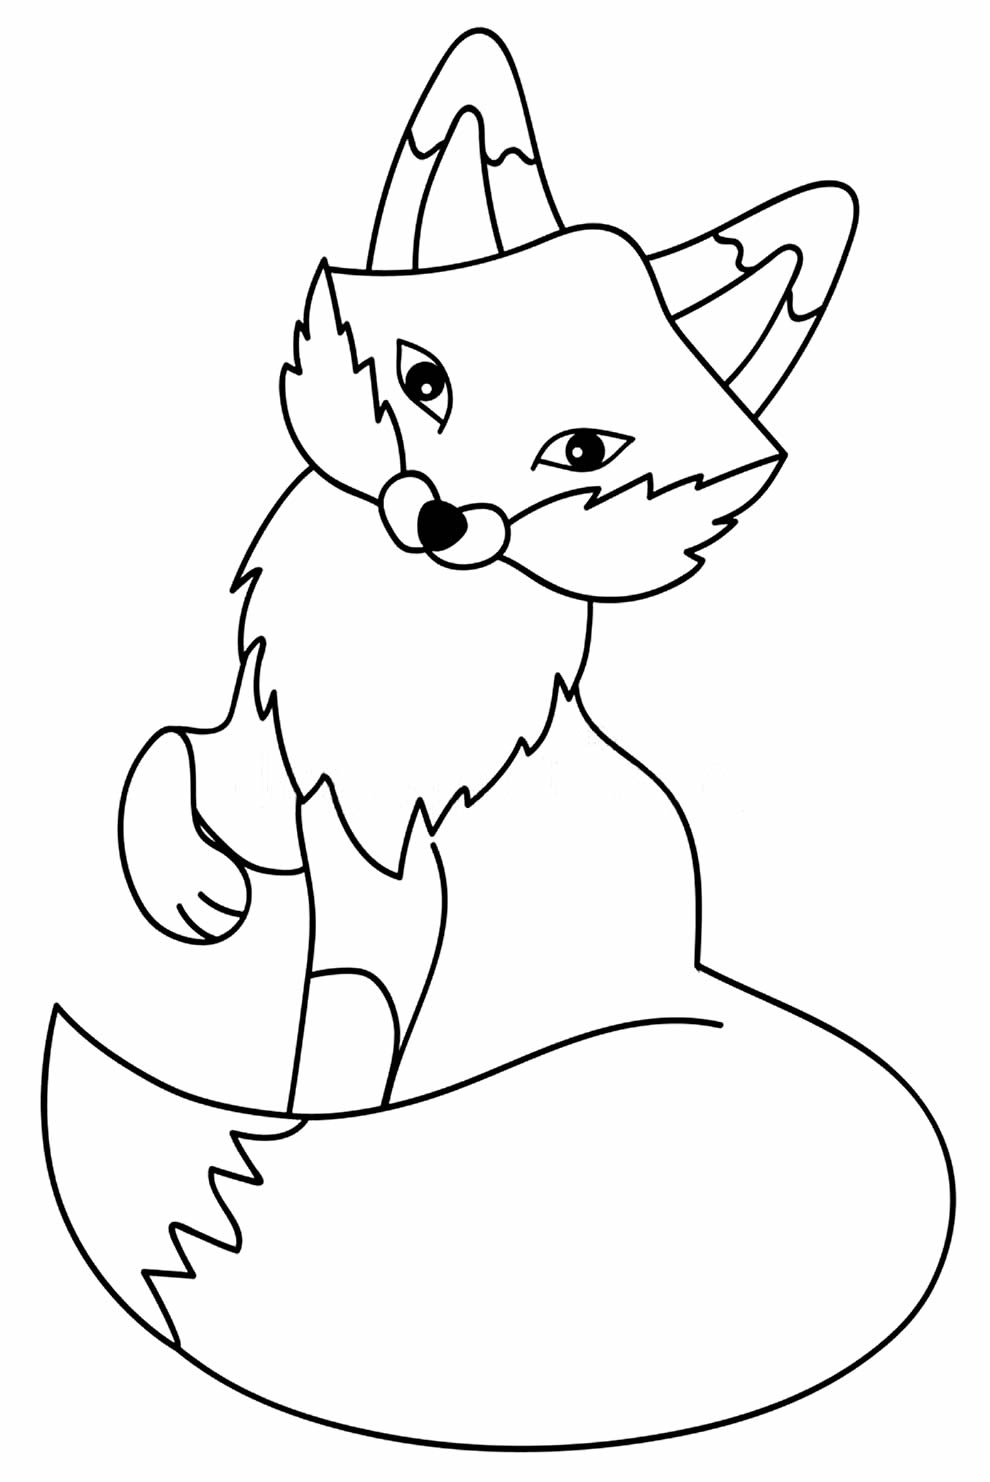 Desenho de Raposa no Natal para colorir - Tudodesenhos